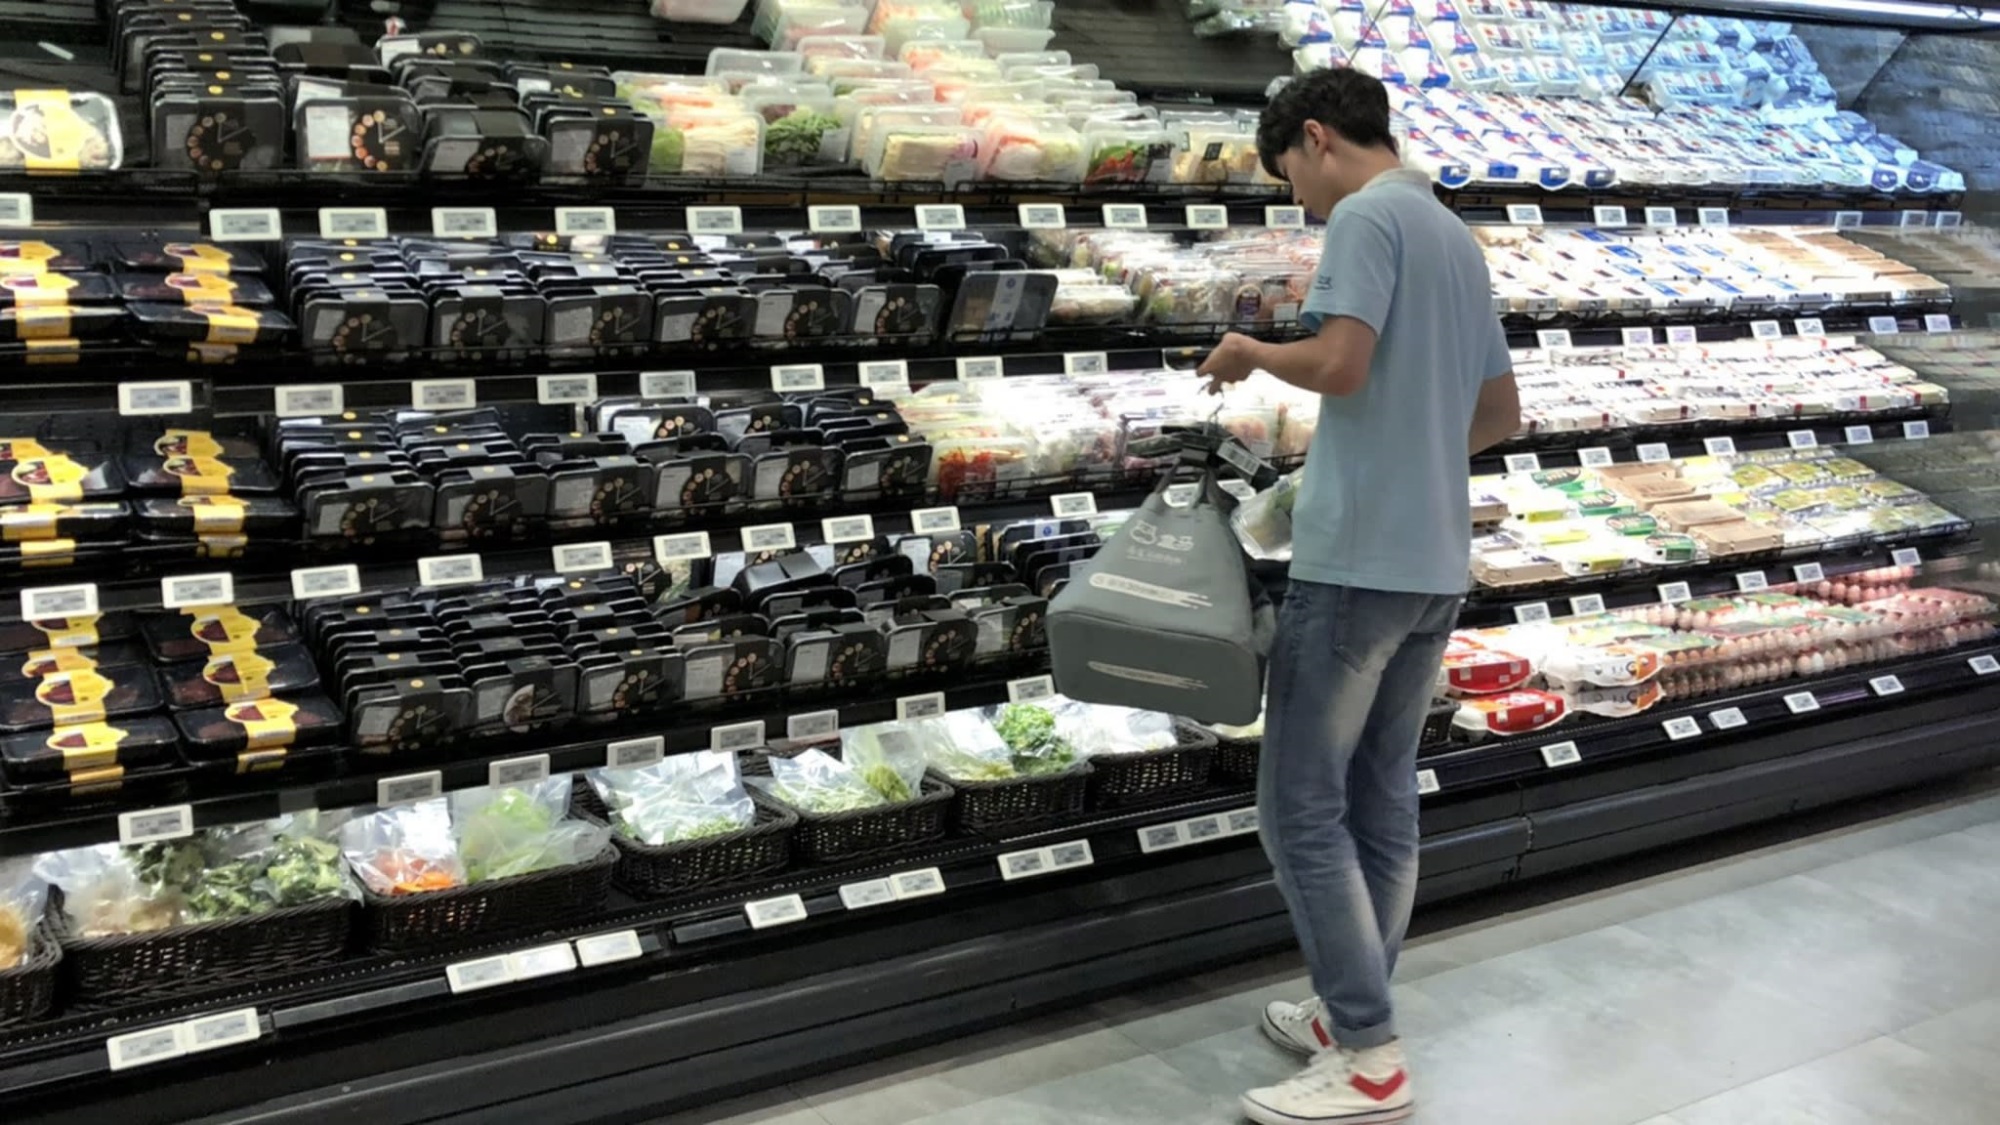 Sữa chua Vinamilk đã có mặt tại siêu thị thông minh Hema của Alibaba tại Trung Quốc - Ảnh 3